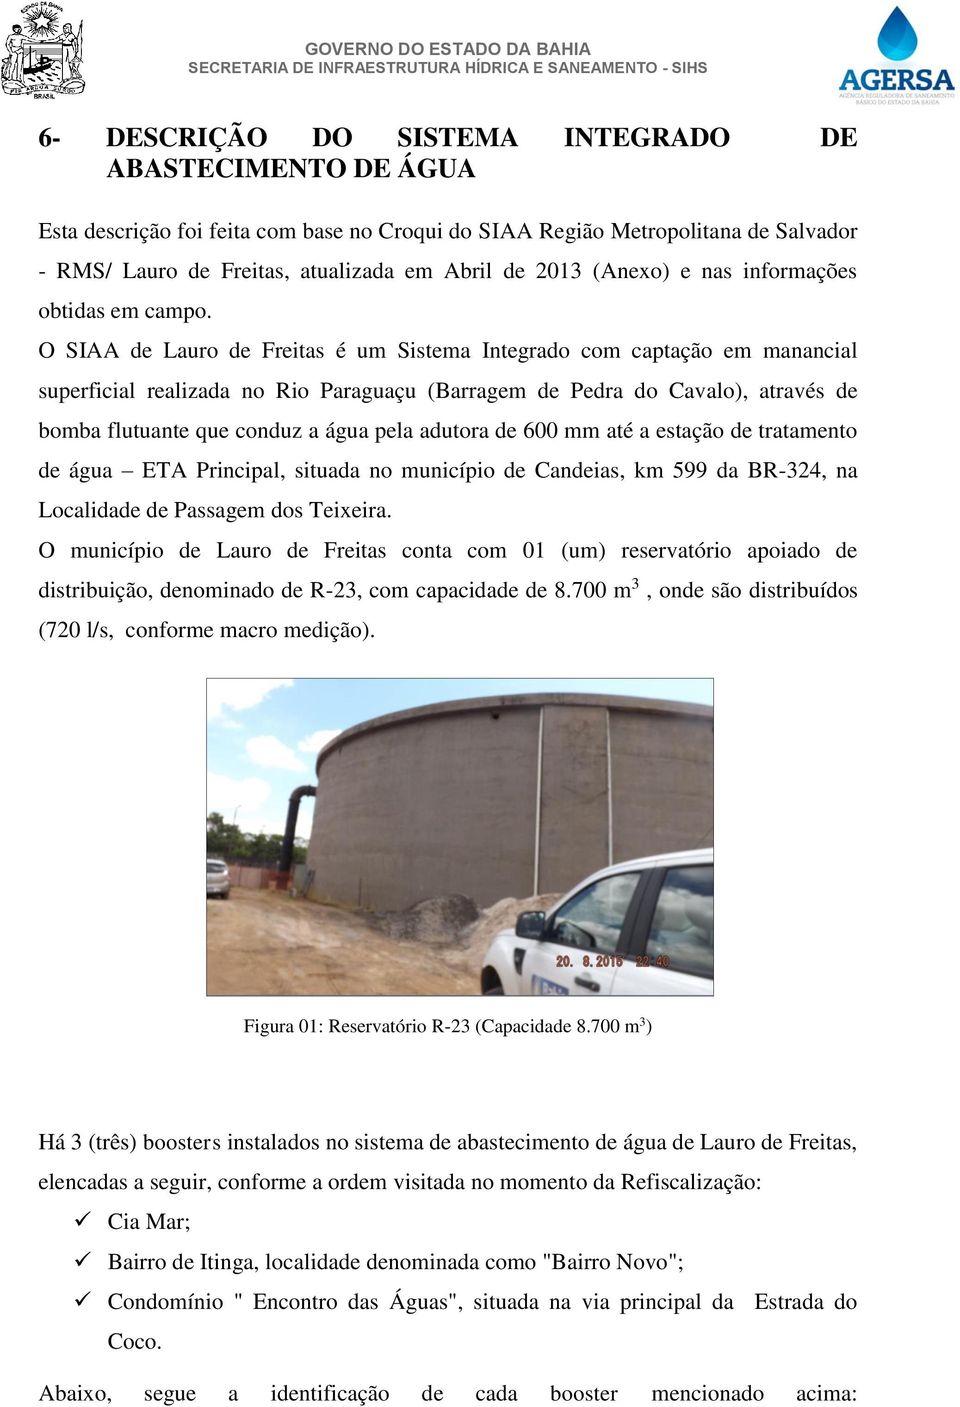 O SIAA de Lauro de Freitas é um Sistema Integrado com captação em manancial superficial realizada no Rio Paraguaçu (Barragem de Pedra do Cavalo), através de bomba flutuante que conduz a água pela